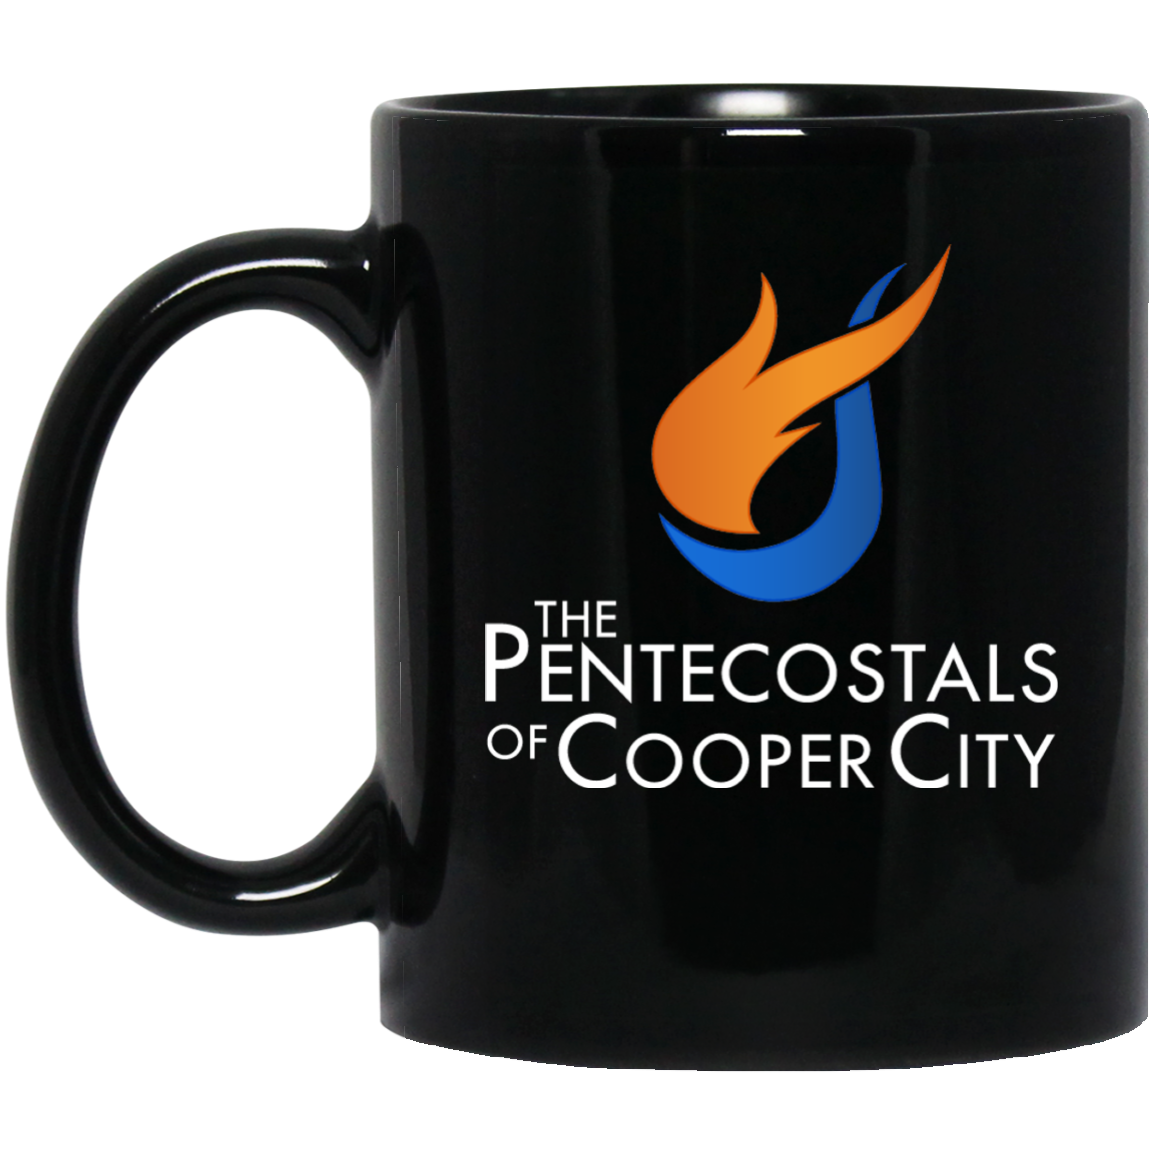 The Pentecostals Of Cooper City - 11 oz. Black Mug